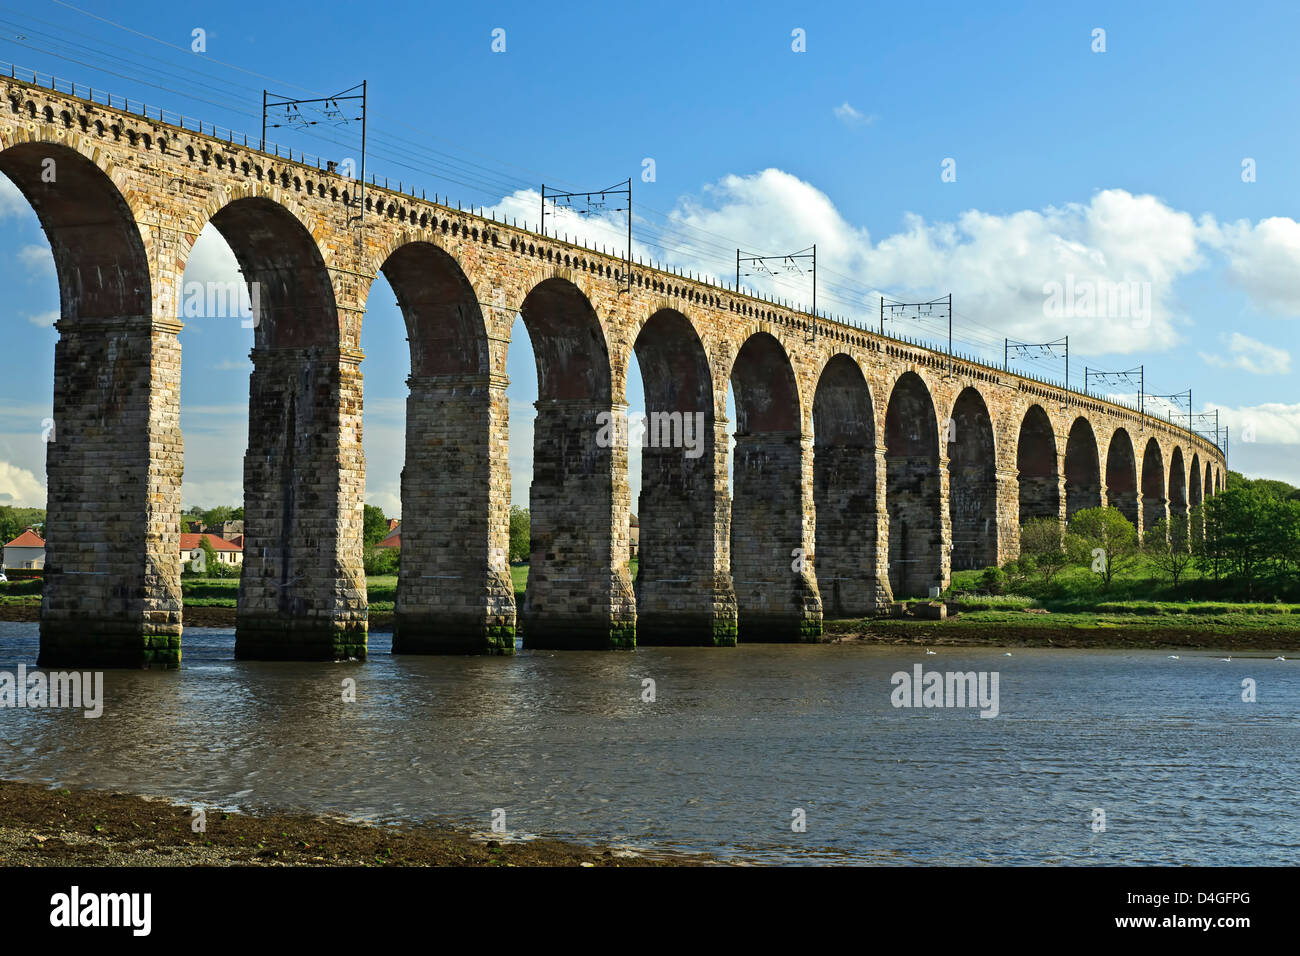 Frontière royale Viaduc Ferroviaire (1850) et de la rivière Tweed, Berwick-upon-Tweed, Angleterre, Royaume-Uni Banque D'Images